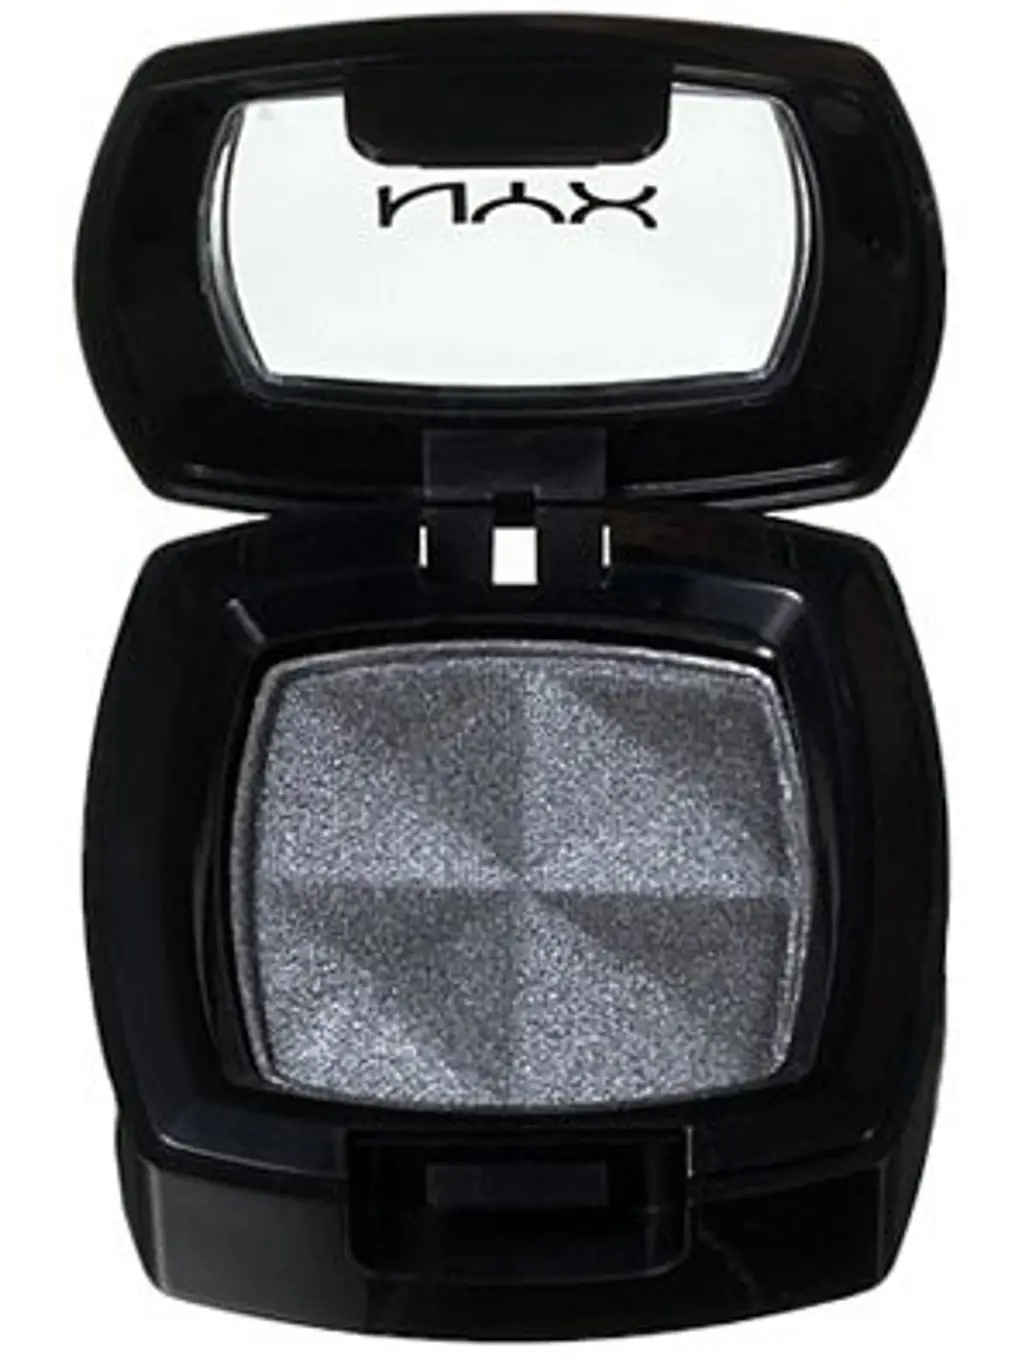 NYX Single Eye Shadow in Silver